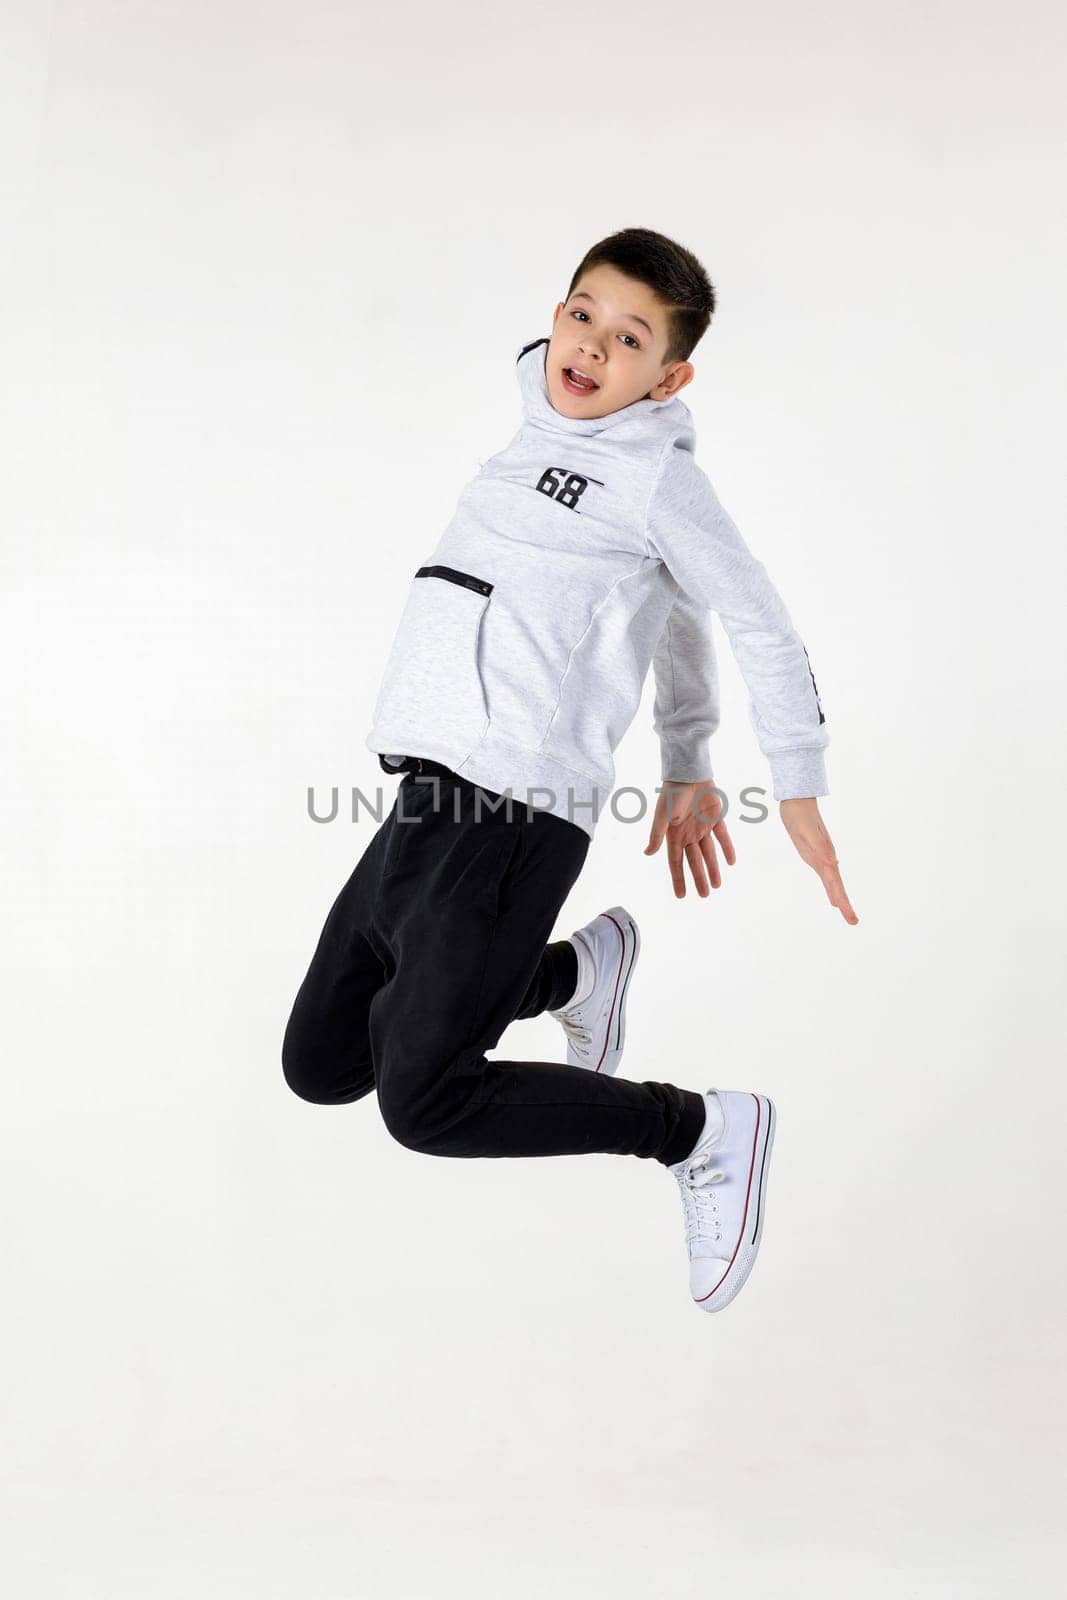 Little boy jumping by erstudio